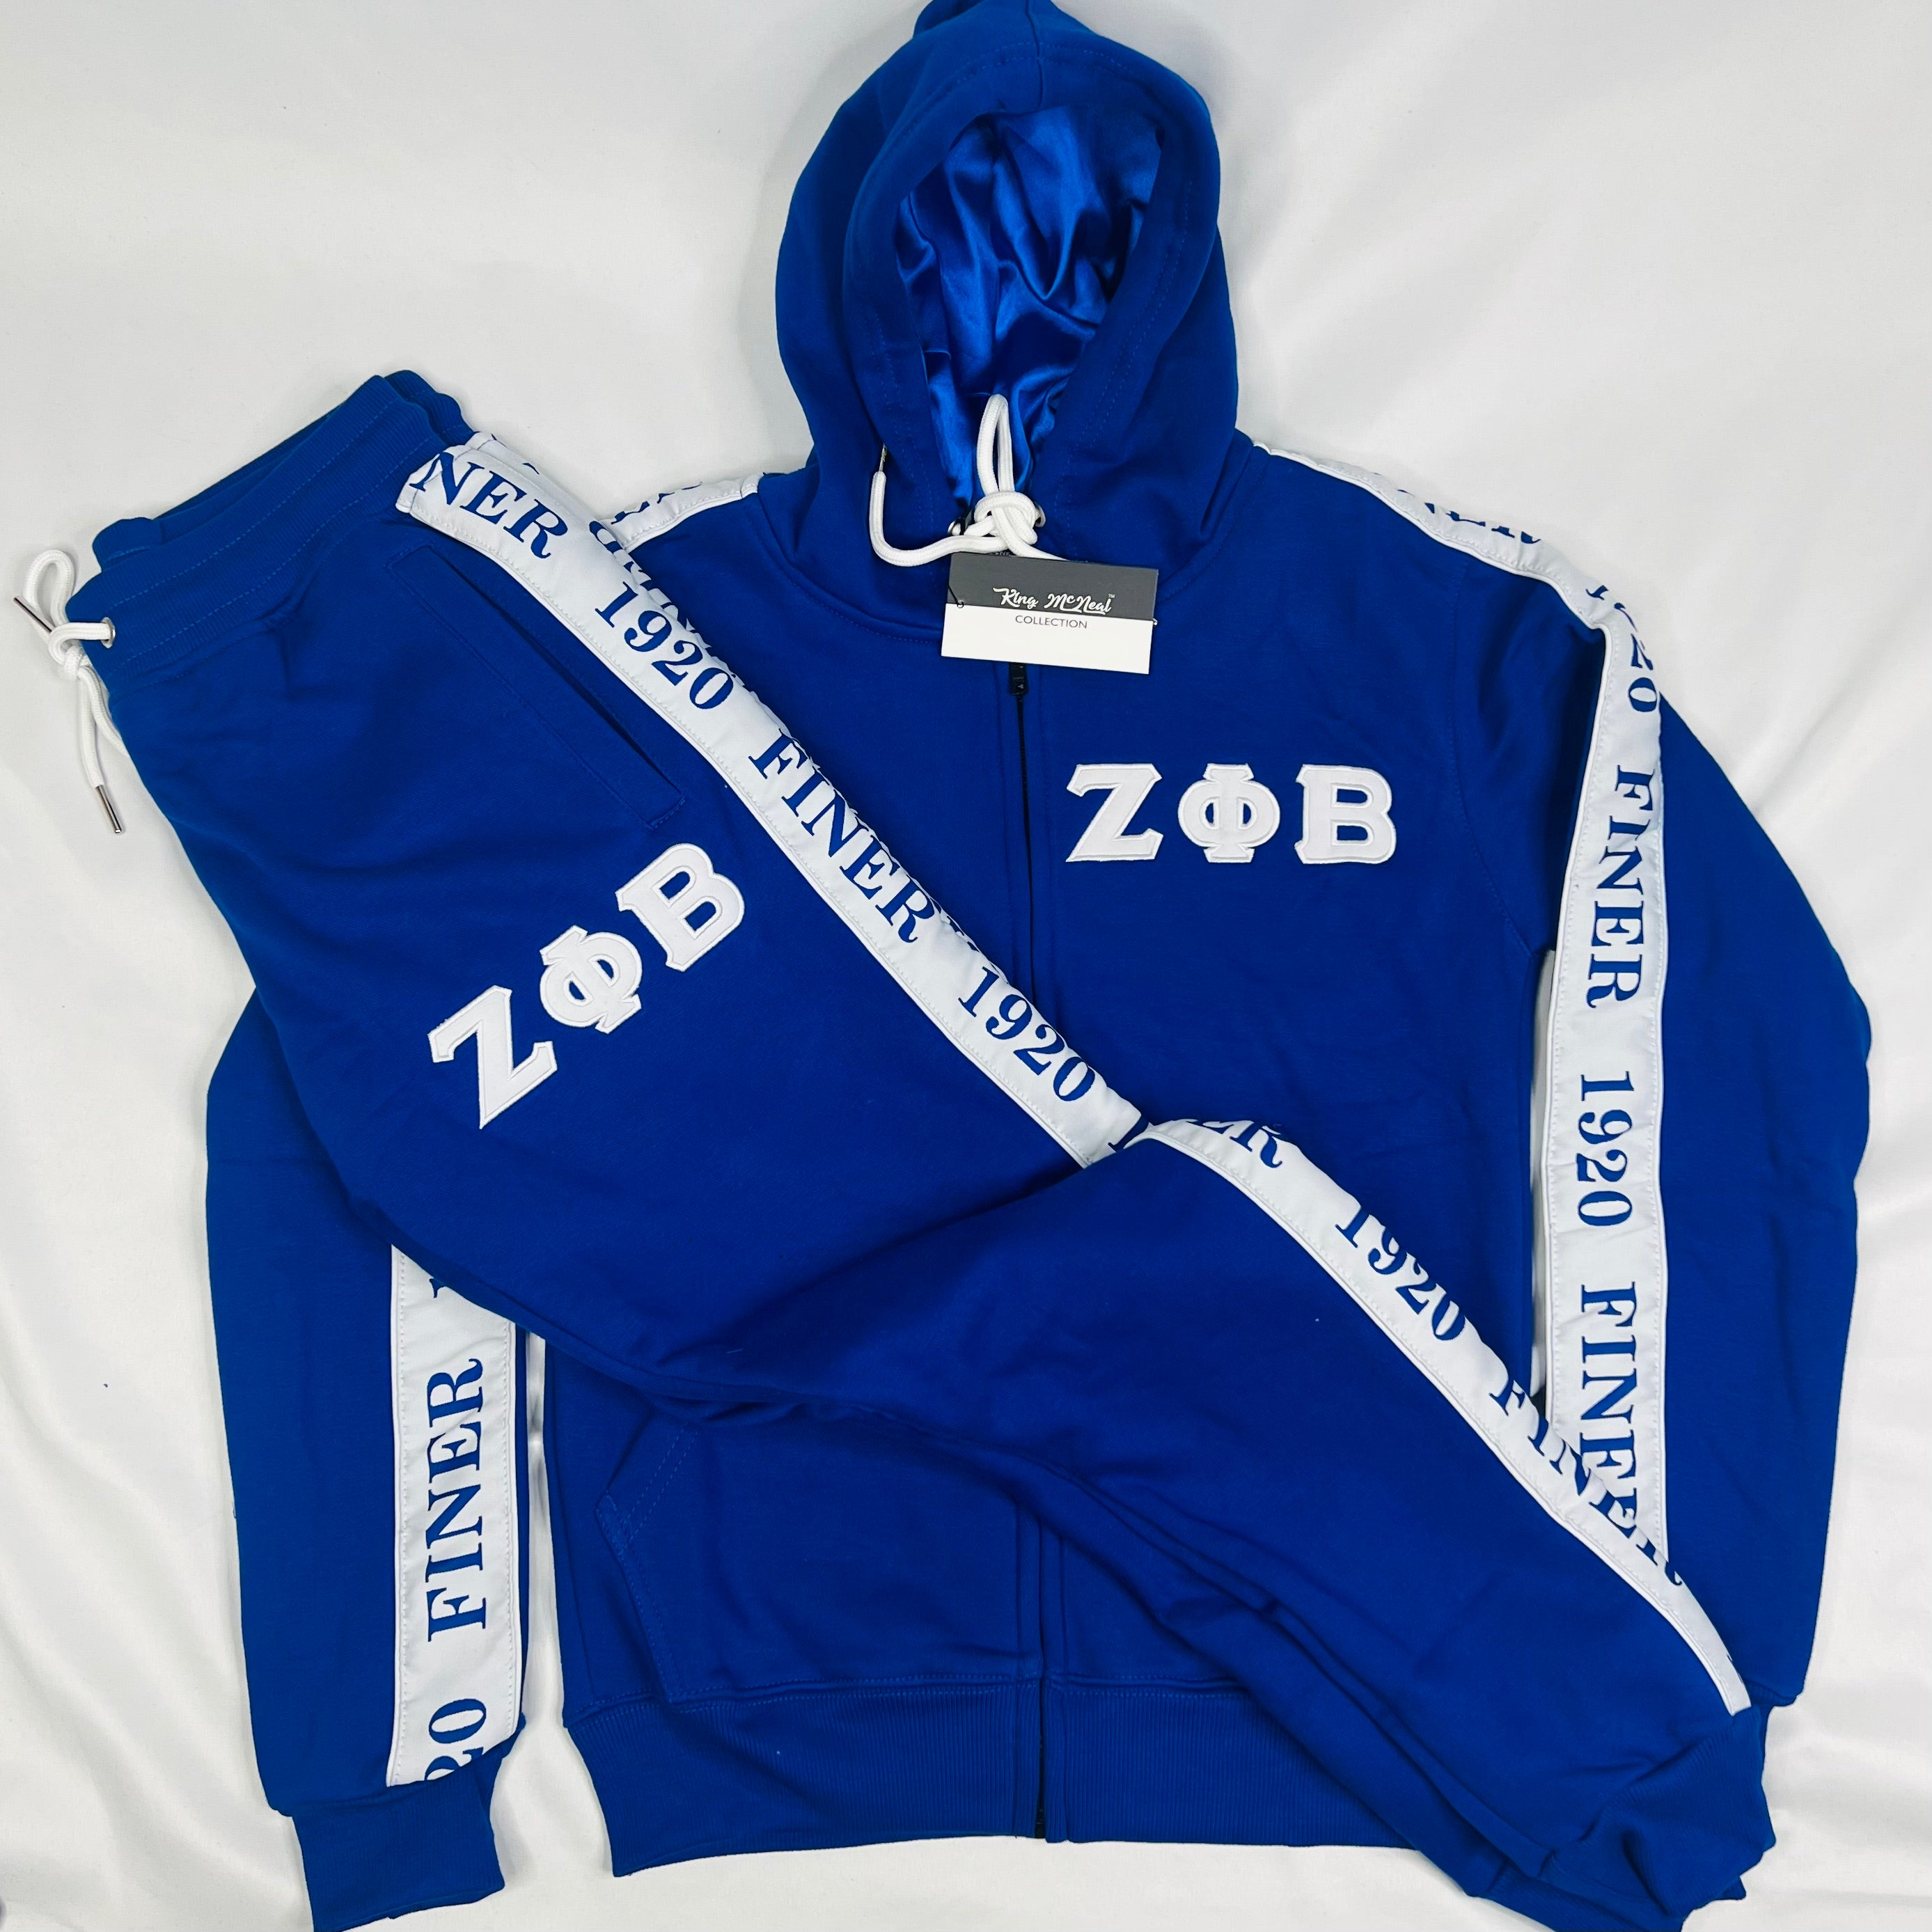 Zeta Blue Tapered Jacket (Unisex Size)